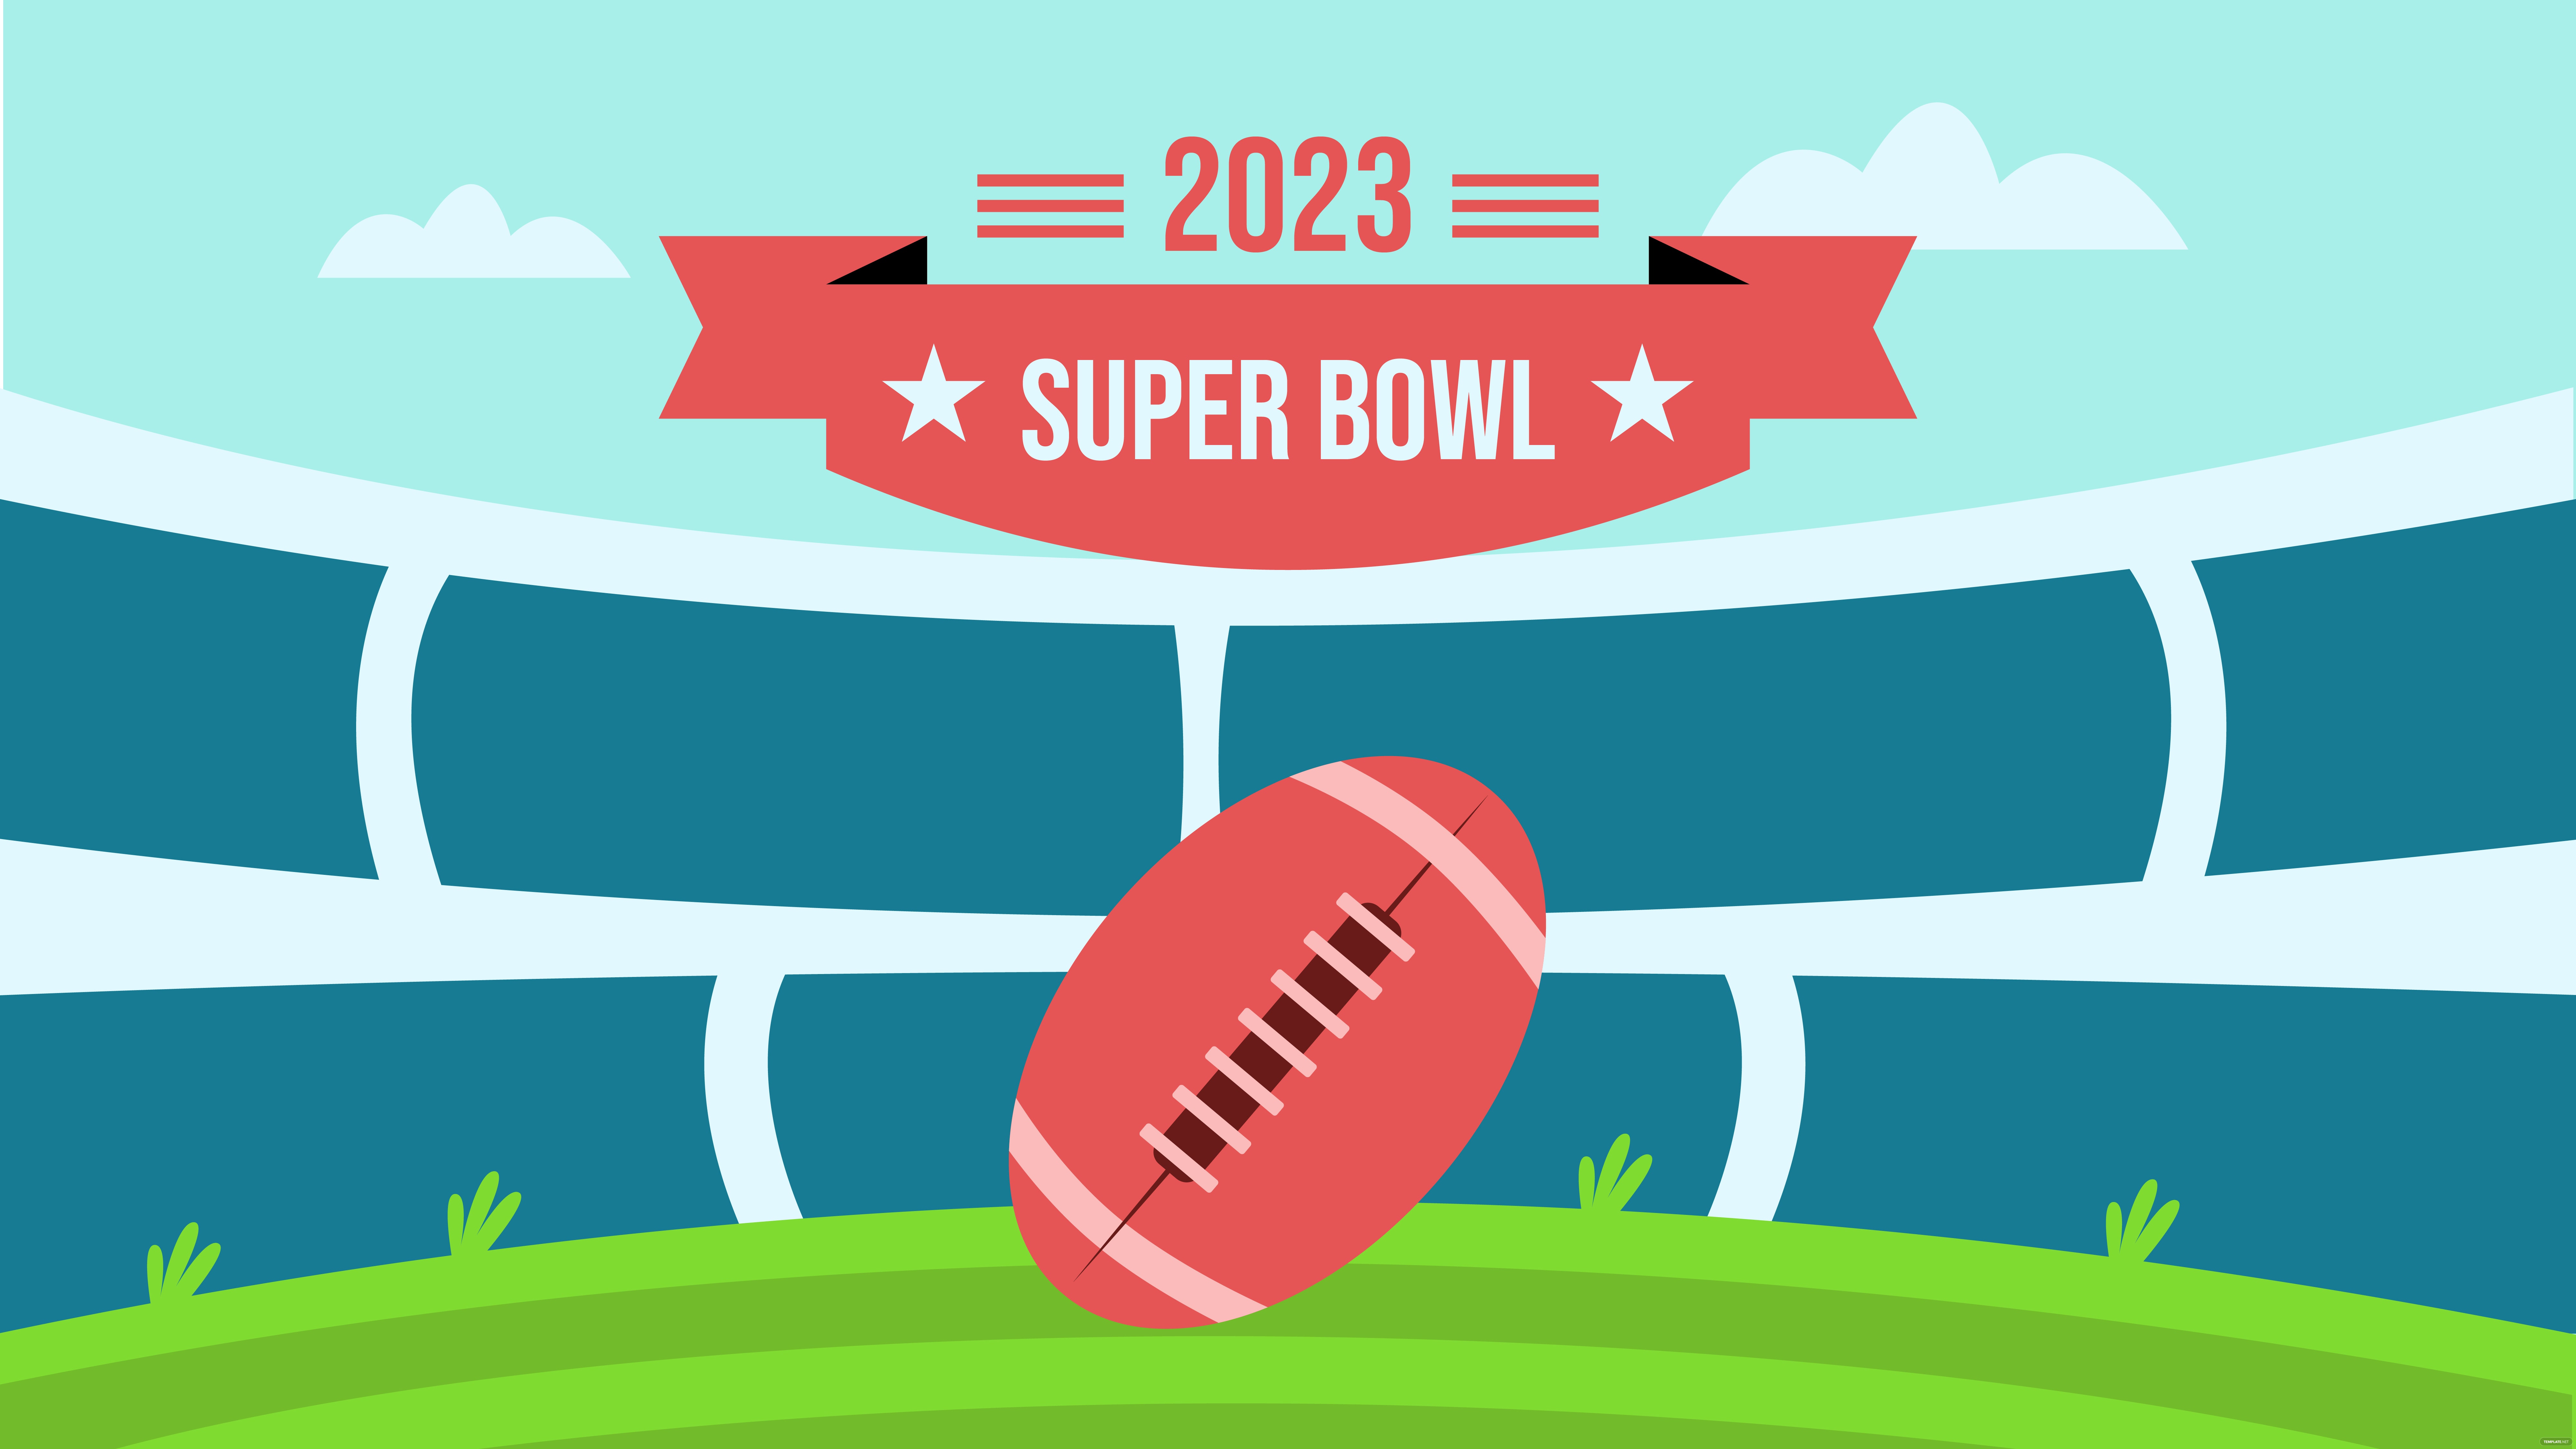 Super Bowl 2023 Photo Background, Illustrator, JPG, PSD, PNG, PDF, SVG